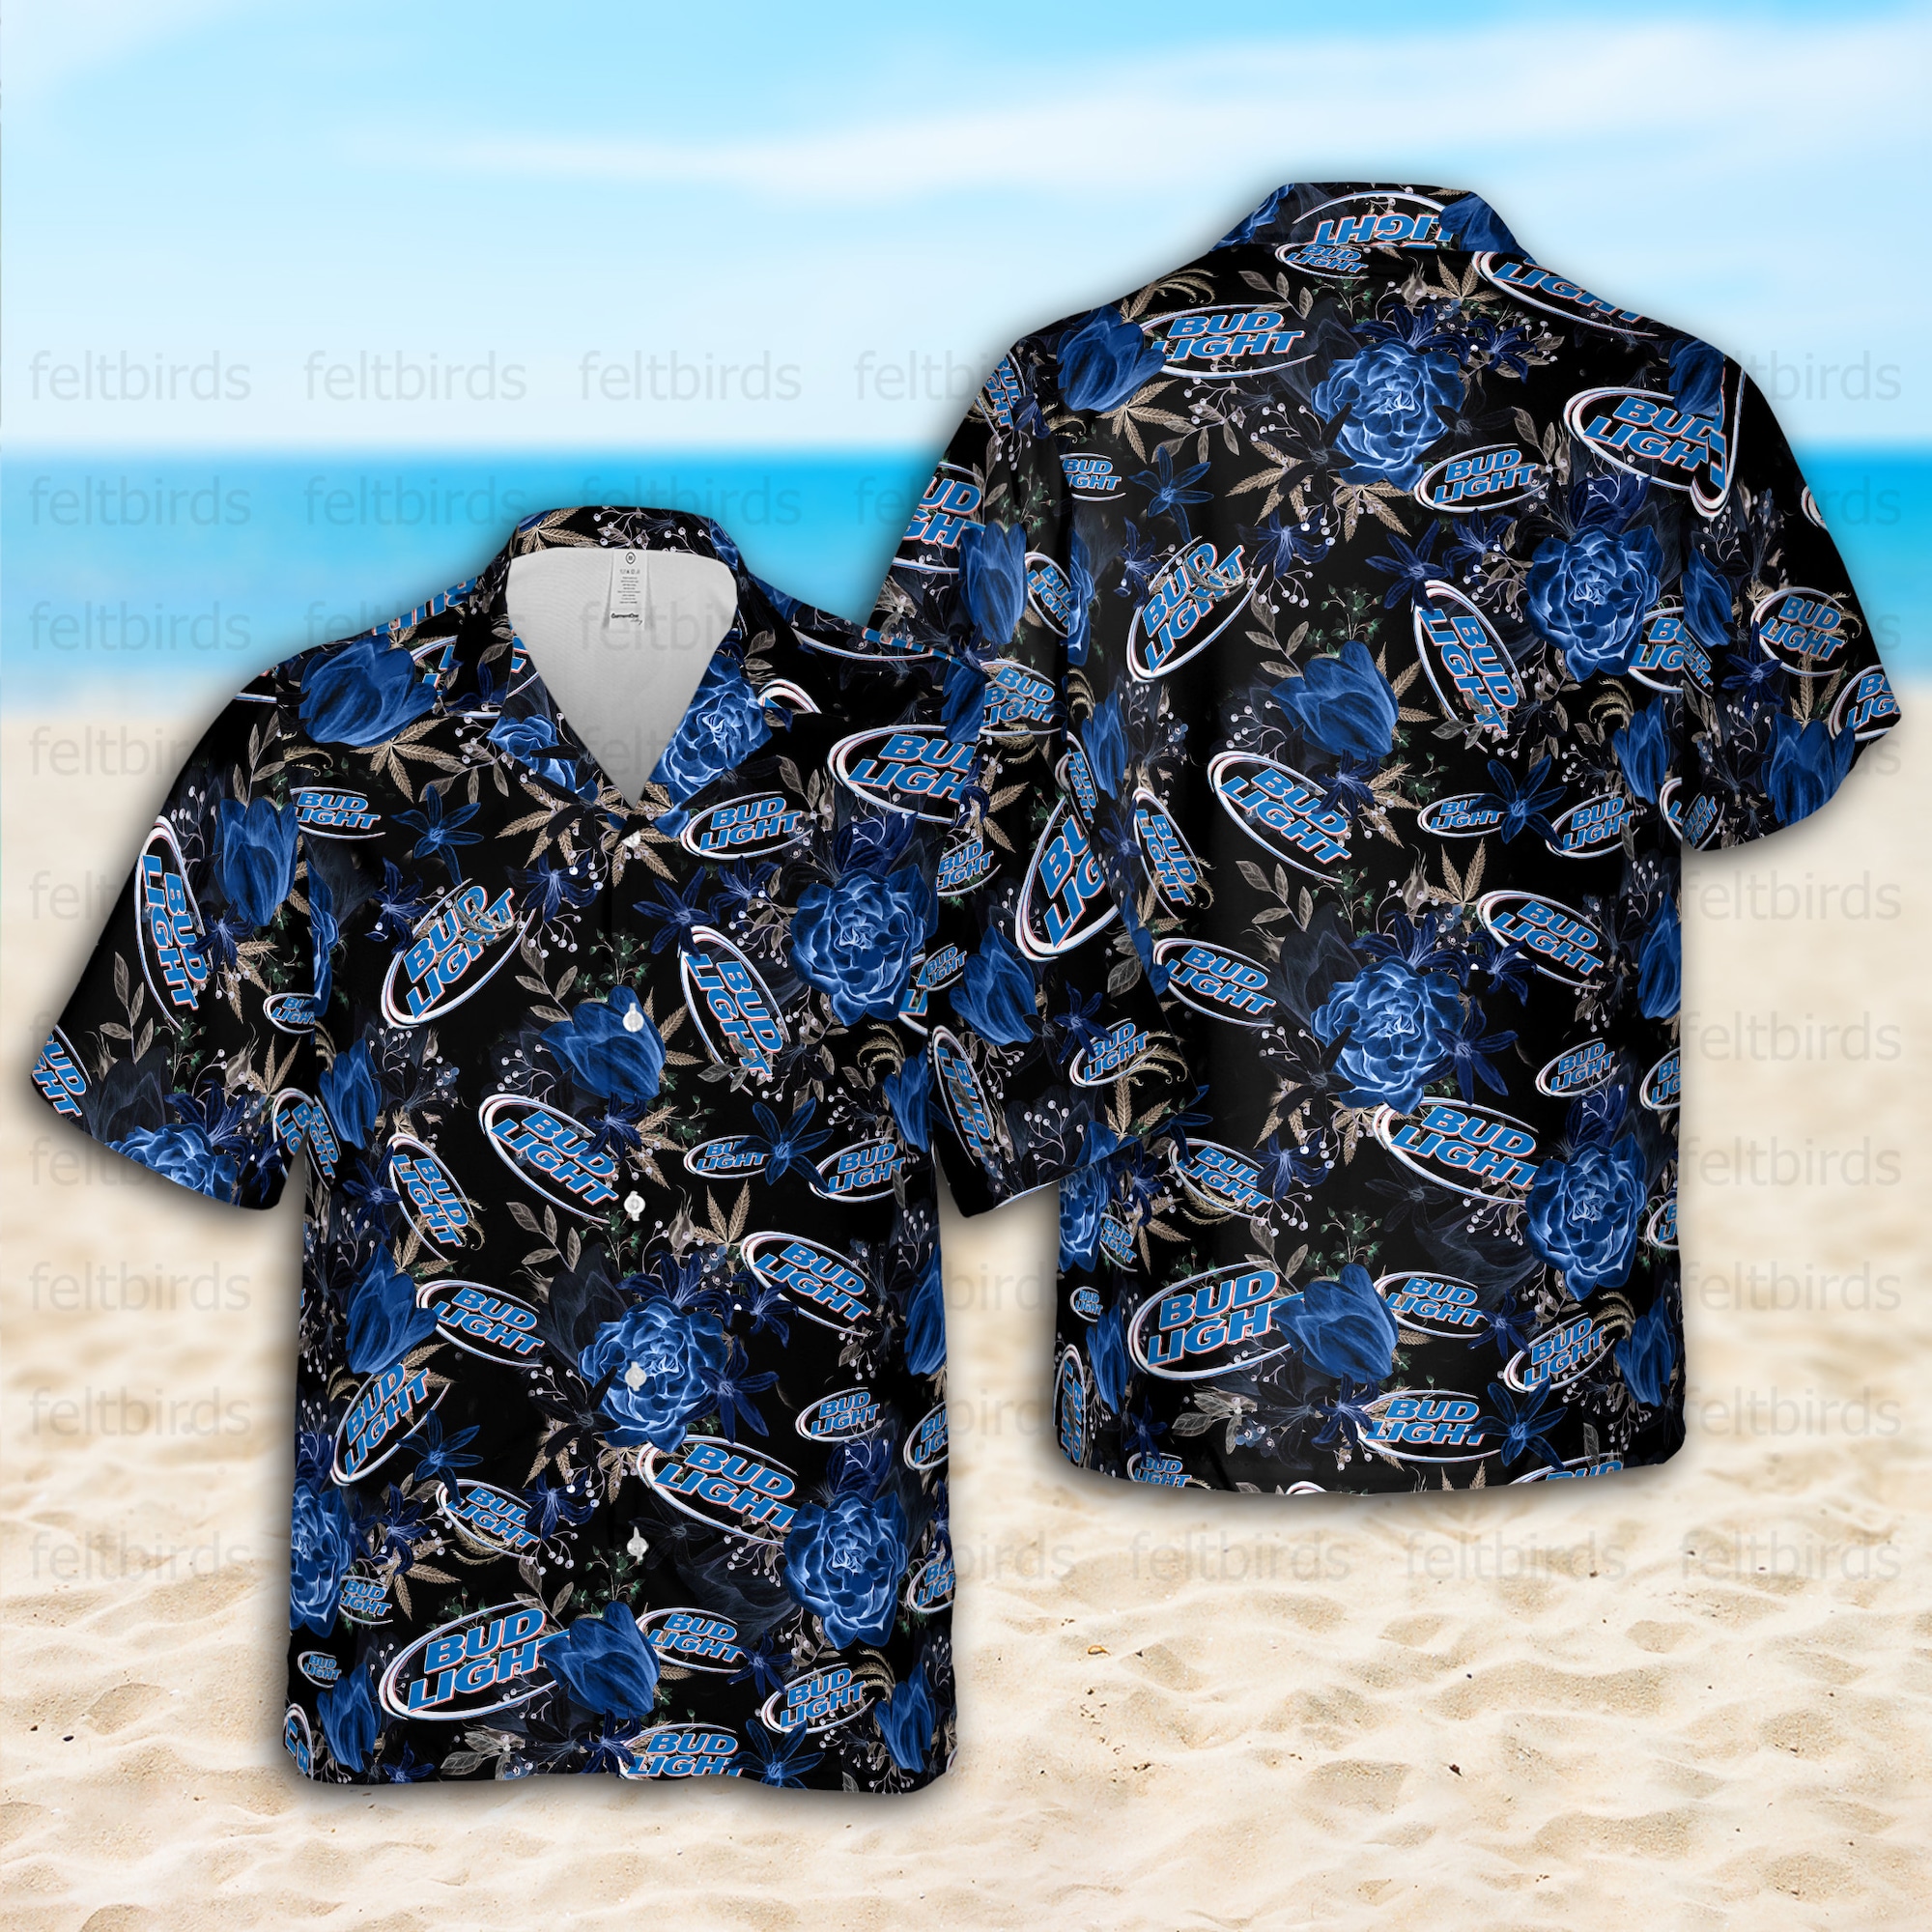 Bud Light Unisex Hawaiian Shirt, Bud Light Beer Button Up Shirt